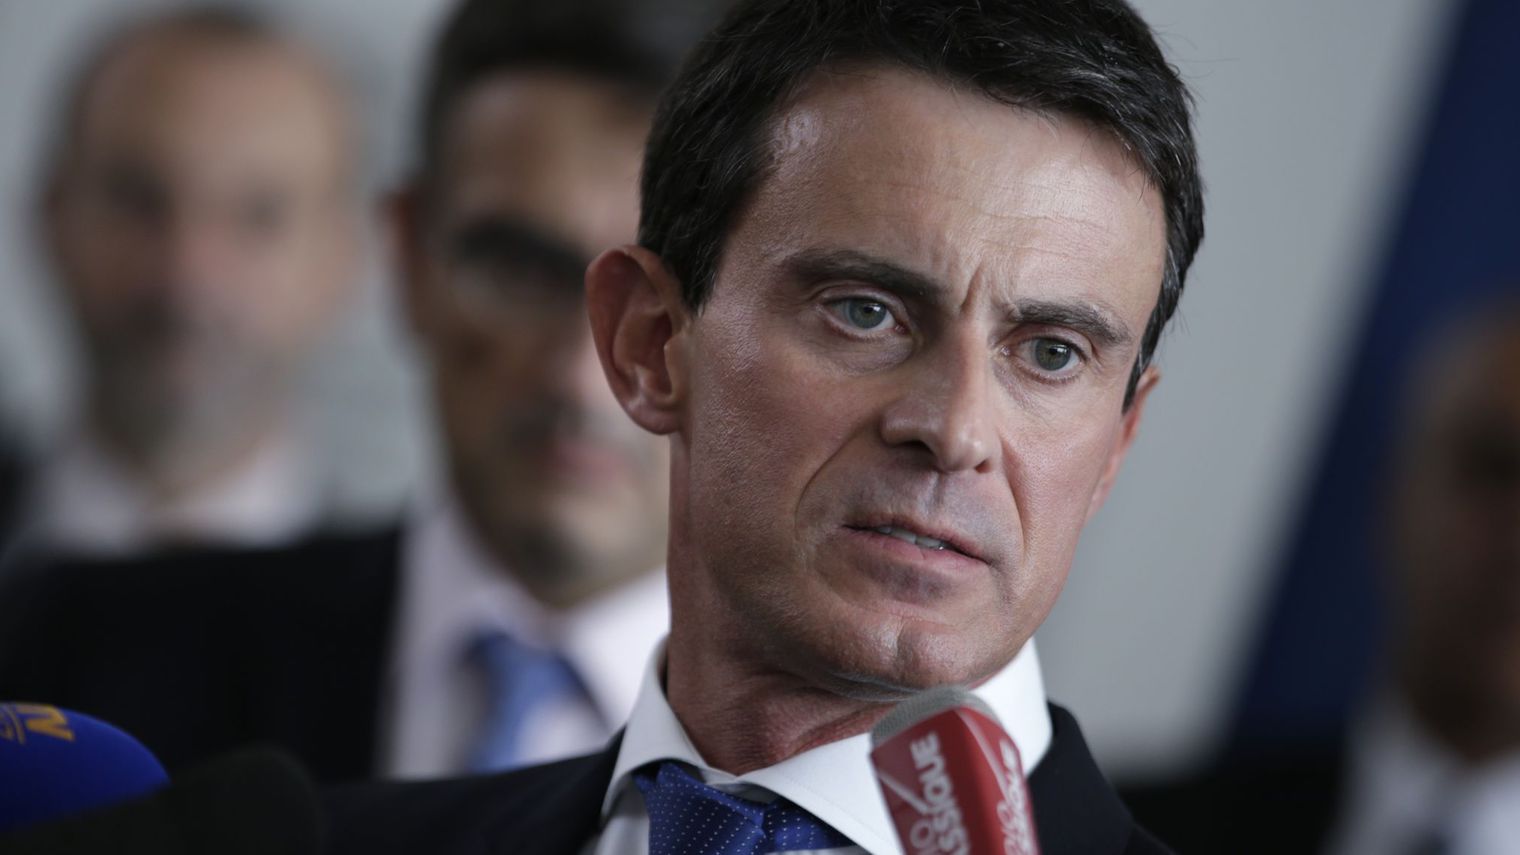 Esclavage : Valls défend &laquo;&nbsp;une mémoire apaisée&nbsp;&raquo; mais écarte l&rsquo;idée de réparations